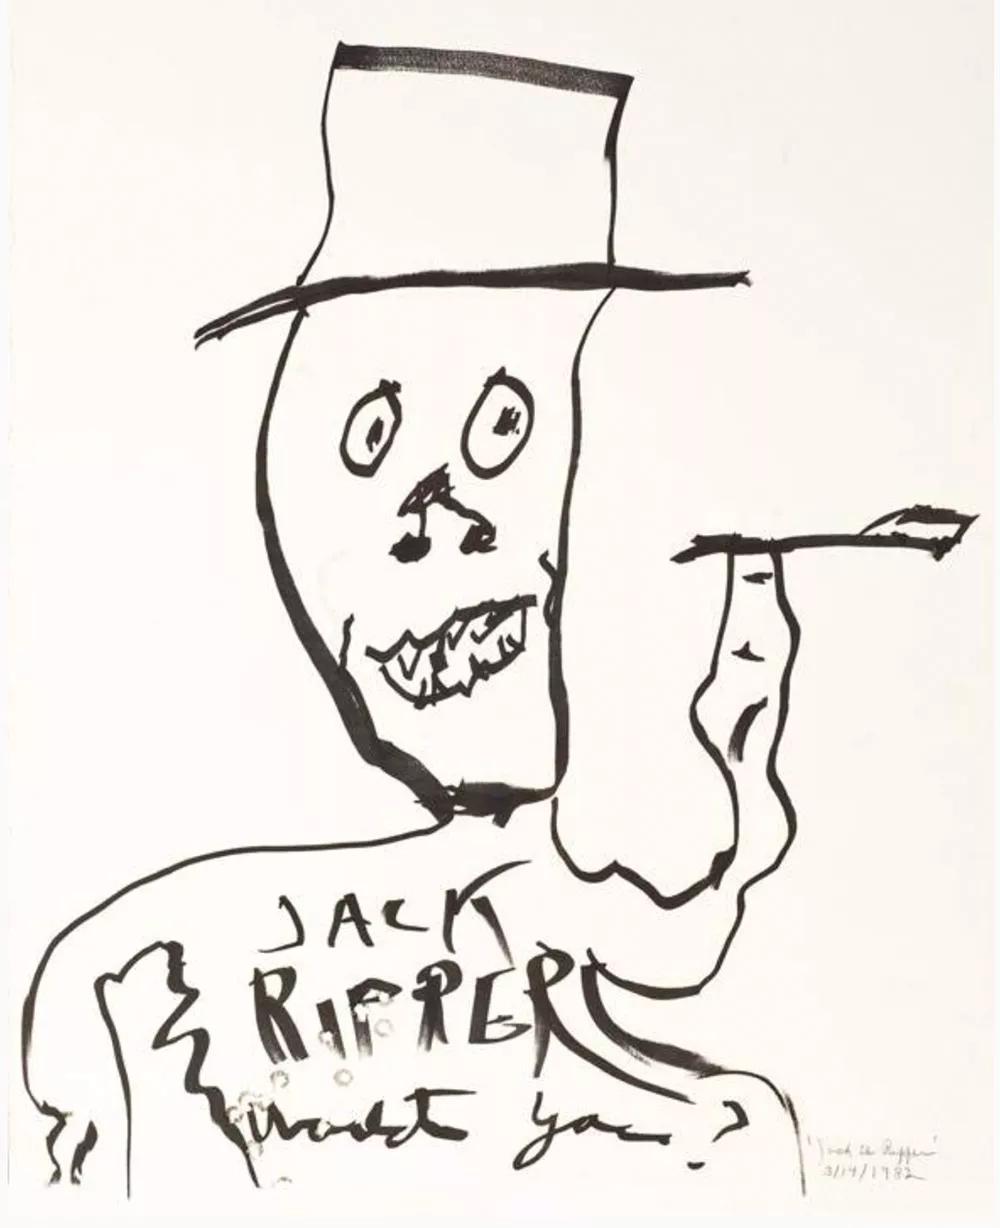 Jack the Ripper dibujado  y rematado con disparos de balas por Burroughs.